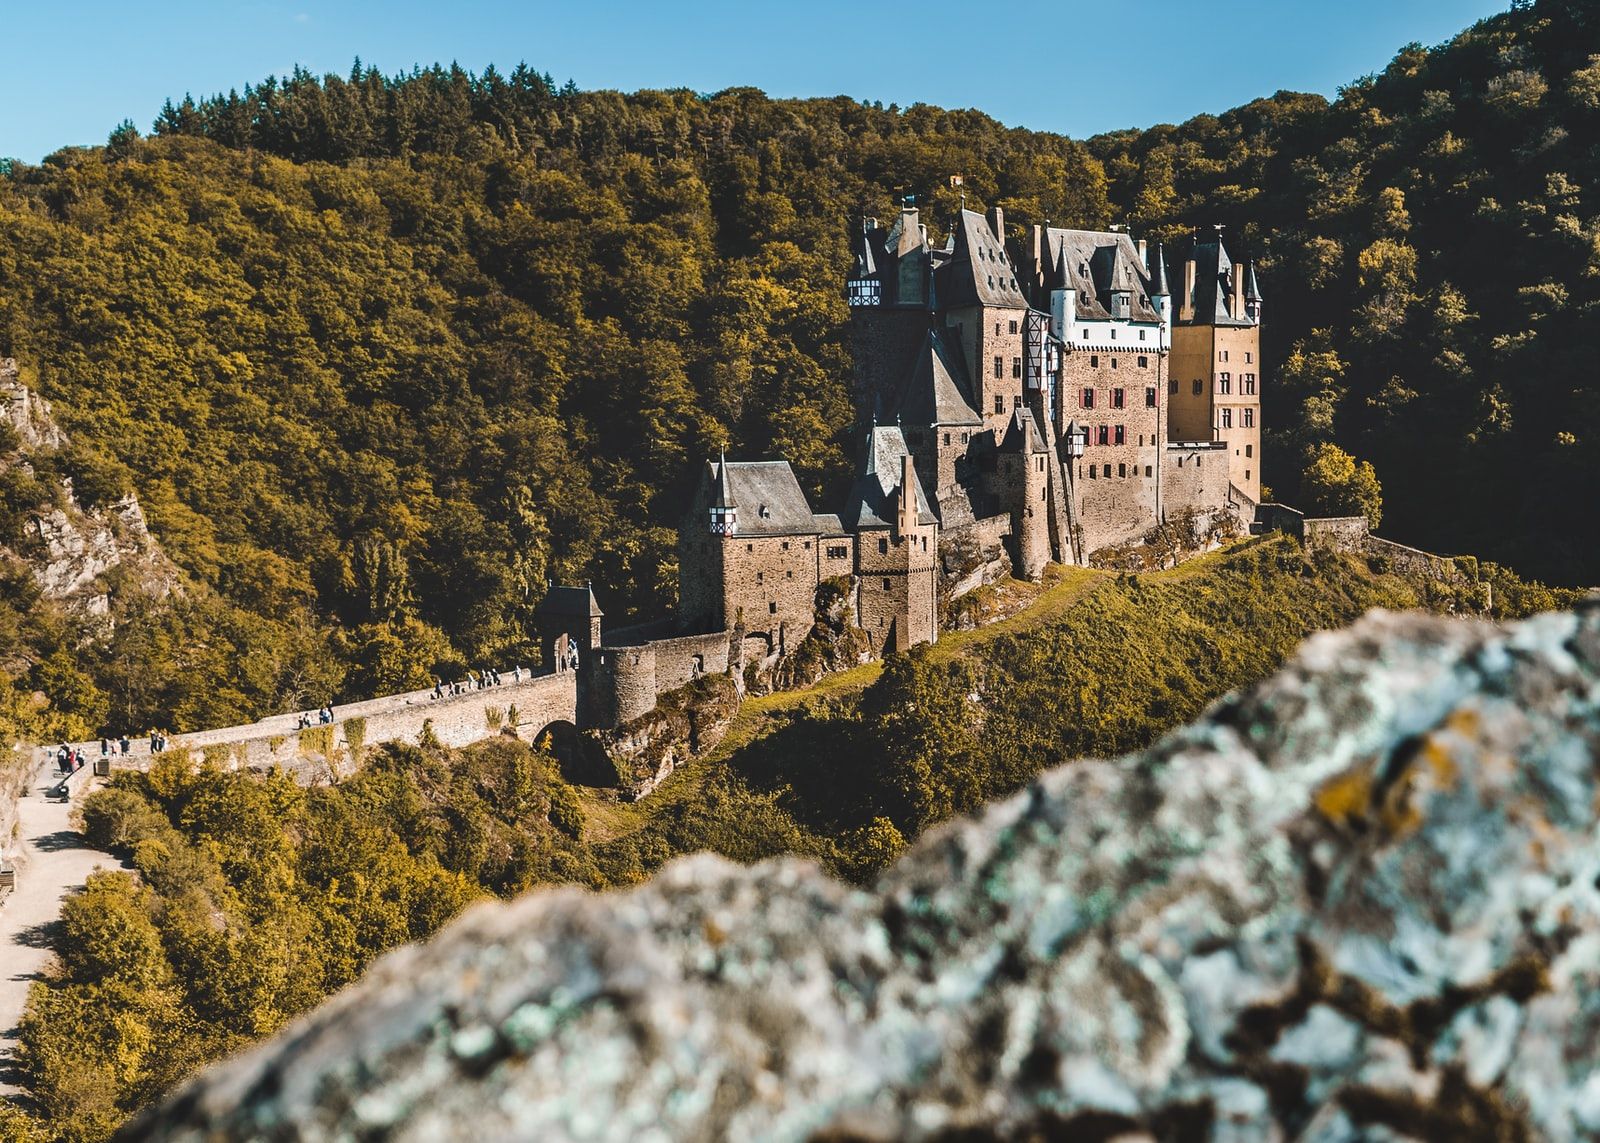 Le château d'Eltz sur la Moselle est probablement l'un des motifs les plus photographiés d'Allemagne. Photo: Unsplash